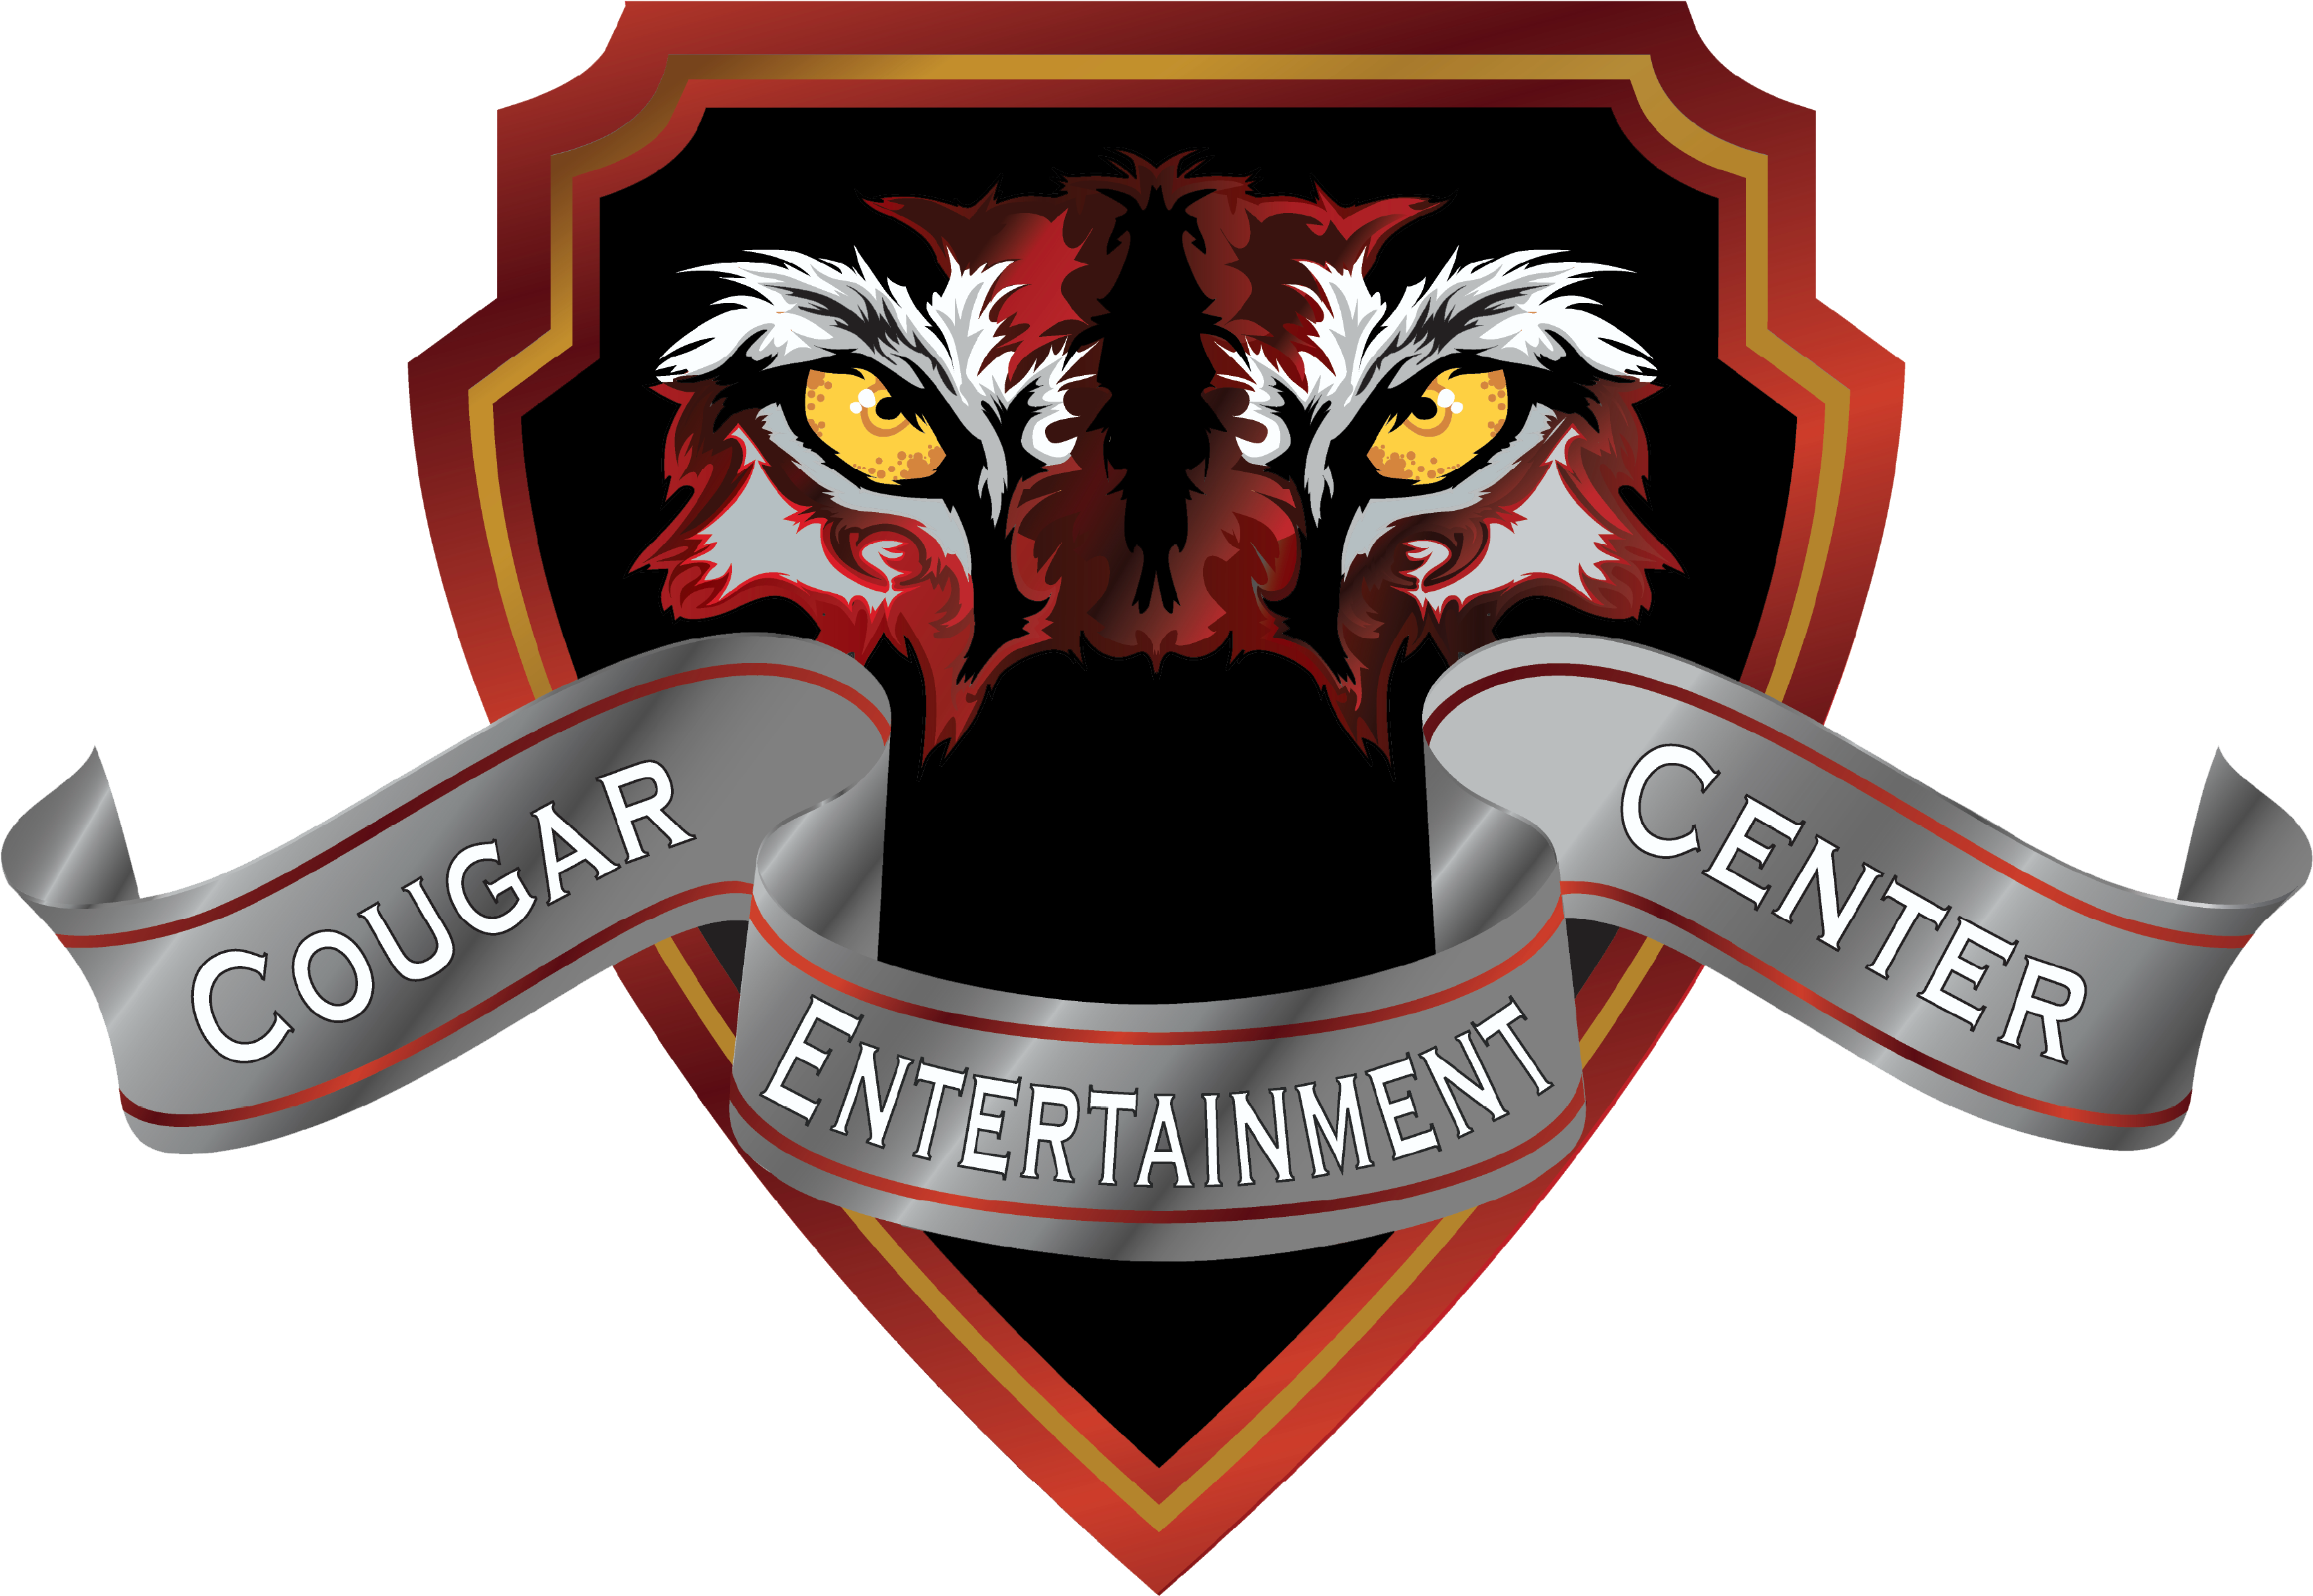 Cougar Entertainment Center Logo PNG